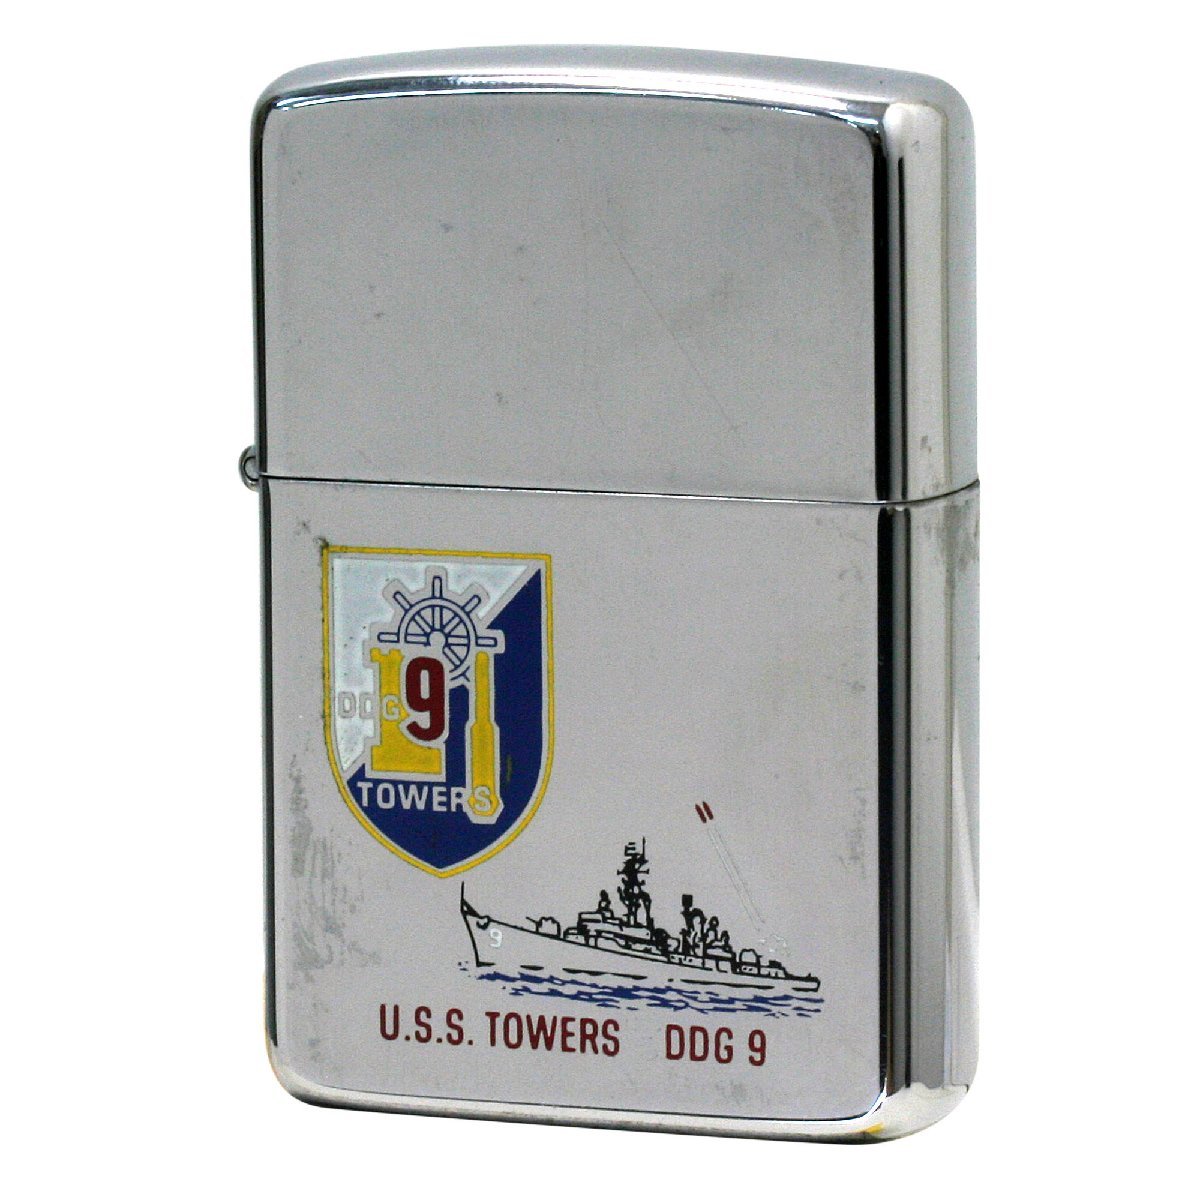 絶版/ヴィンテージ Zippo ジッポー 中古 1986年製造USS Towers DDG9 アメリカ海軍 駆逐艦 [B]使用感ありやや傷汚れあり